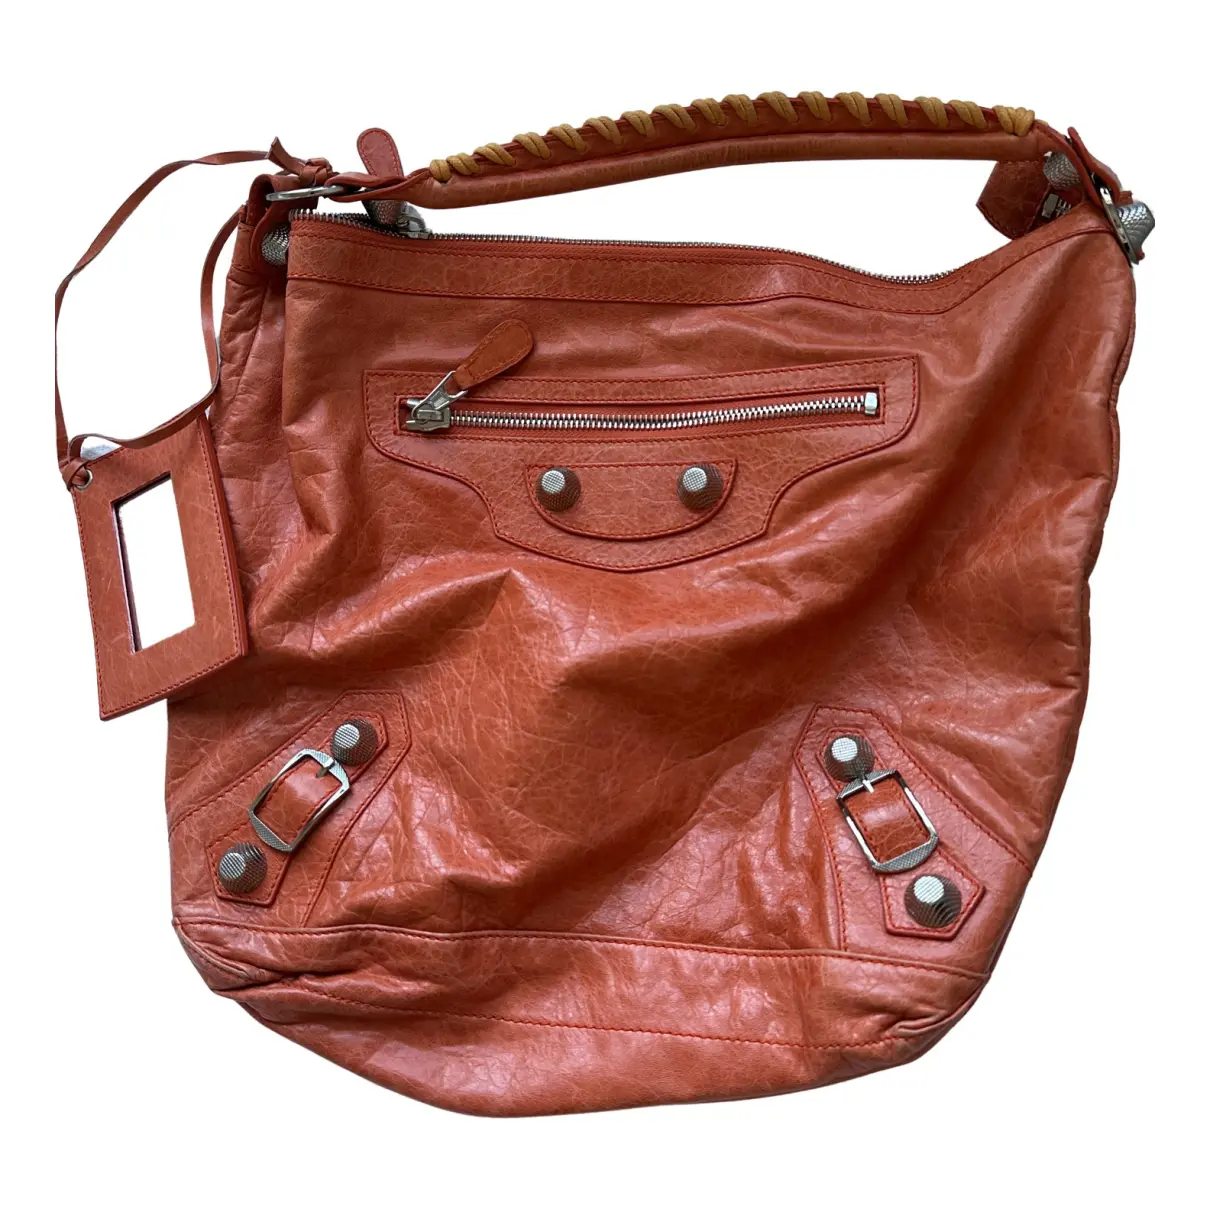 Day leather handbag Balenciaga